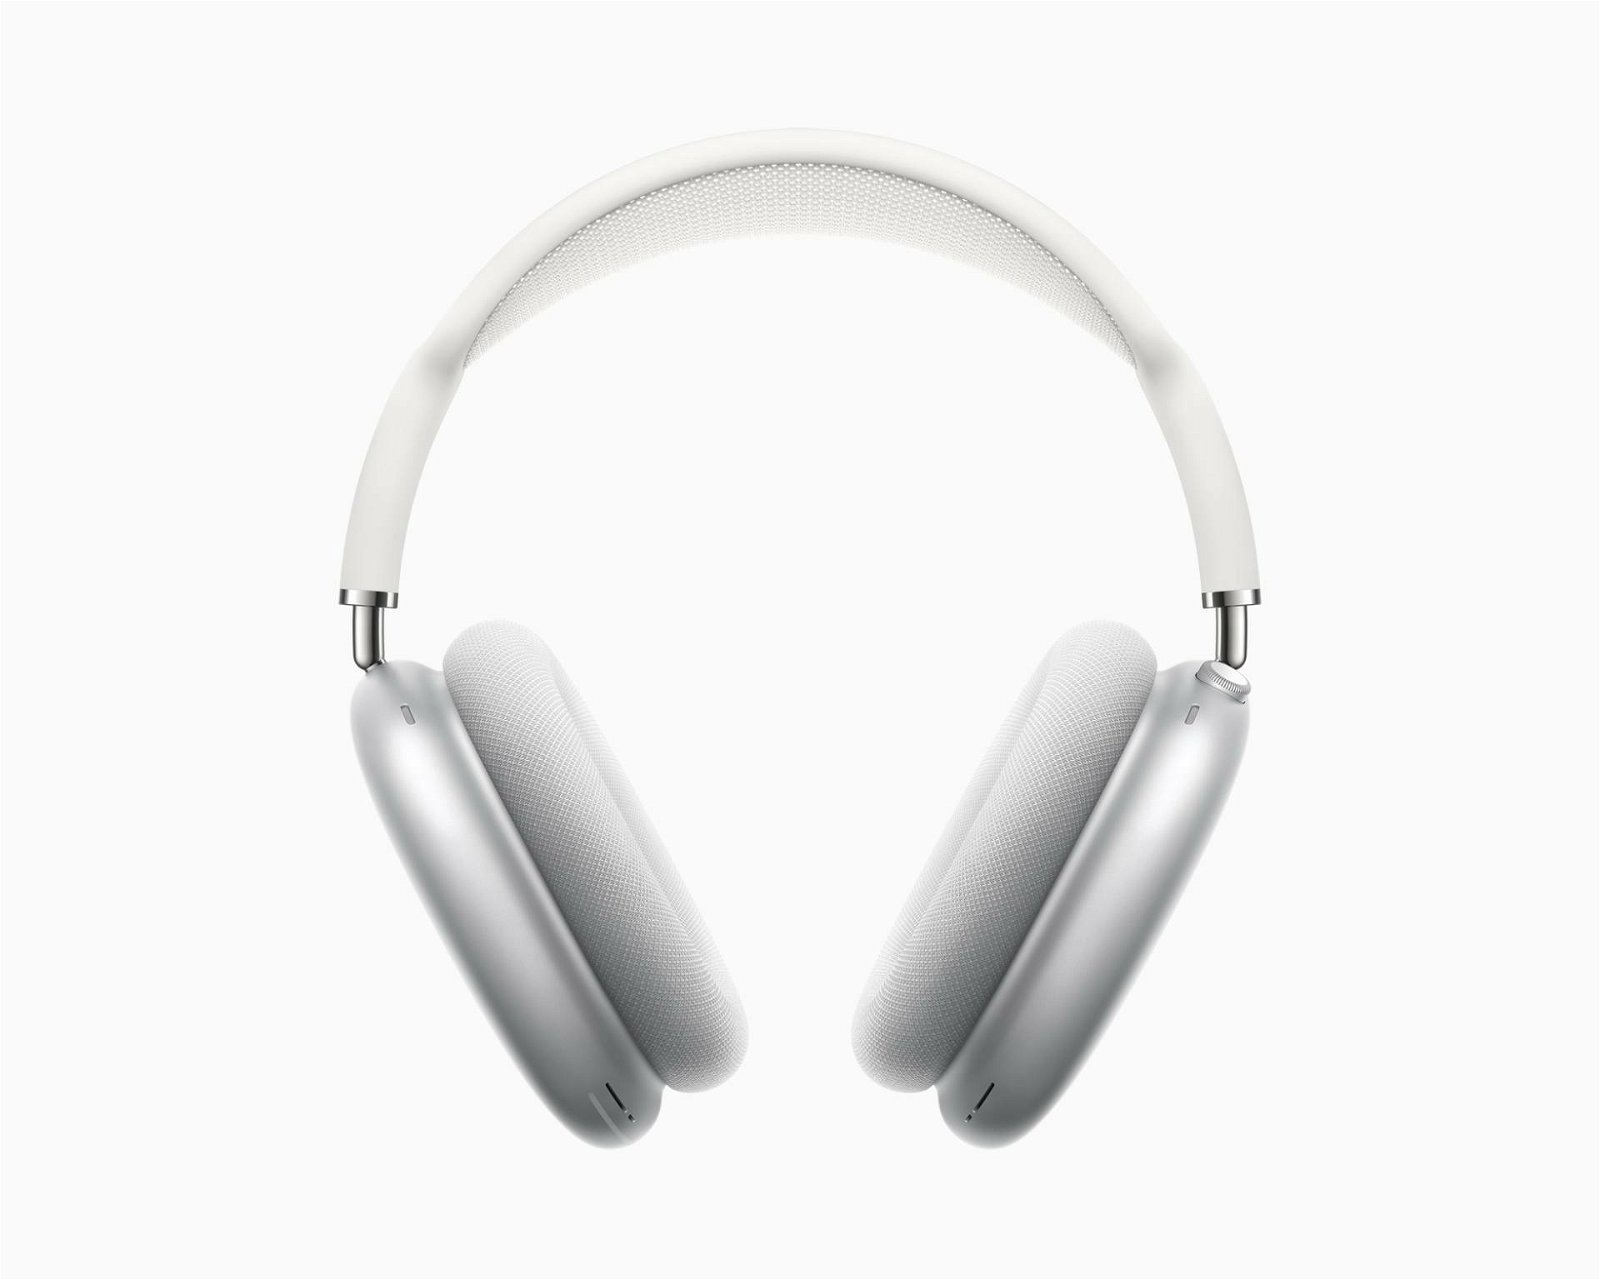 Immagine di AirPods Max, le cuffie ANC over-ear di Apple dedicate ai più esigenti